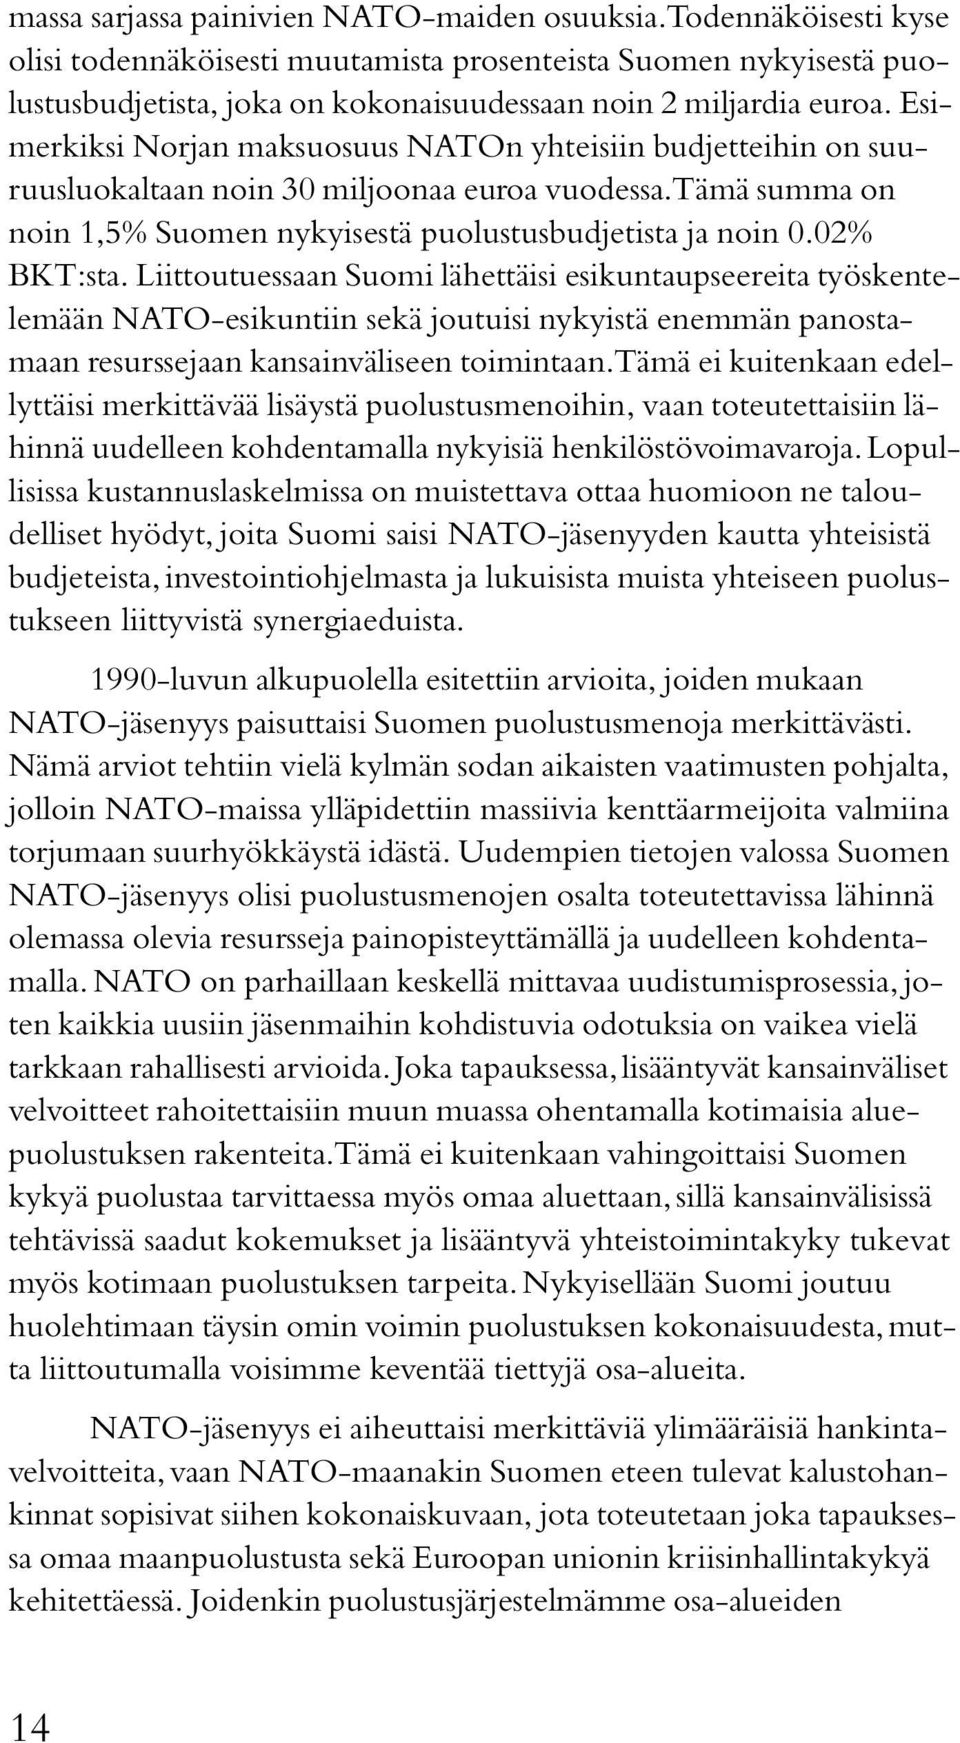 Esimerkiksi Norjan maksuosuus NATOn yhteisiin budjetteihin on suuruusluokaltaan noin 30 miljoonaa euroa vuodessa. Tämä summa on noin 1,5% Suomen nykyisestä puolustusbudjetista ja noin 0.02% BKT:sta.